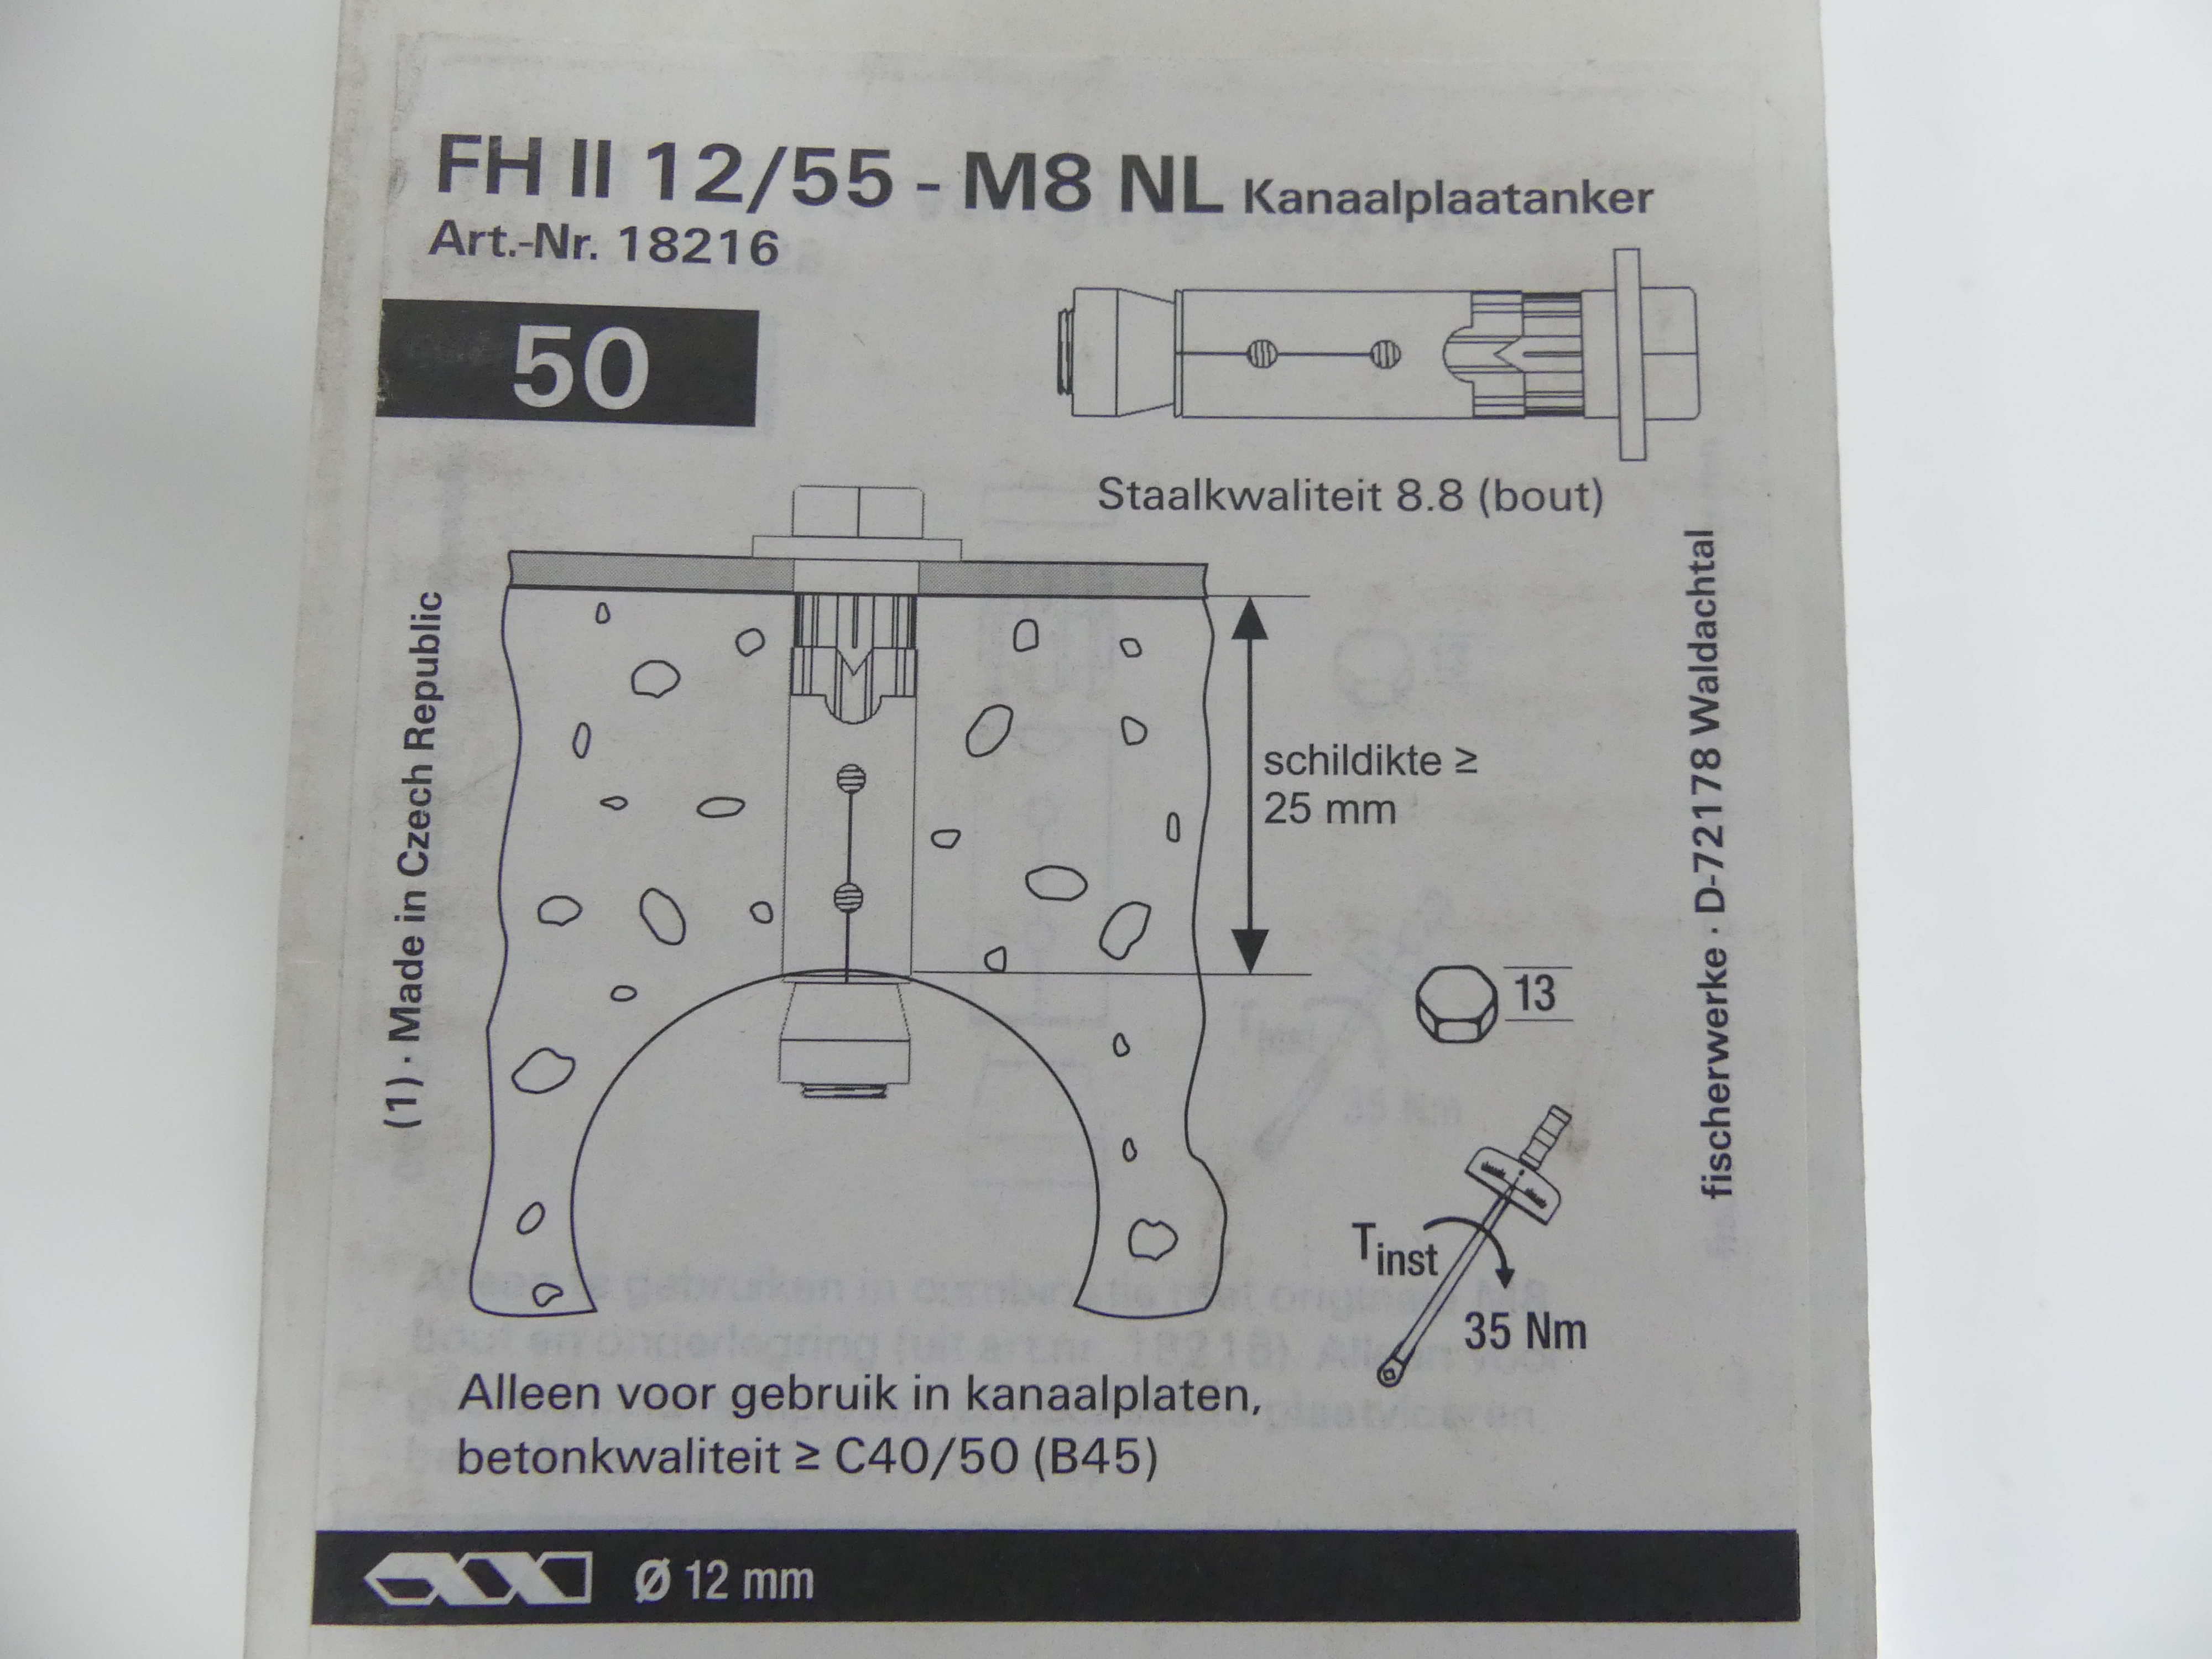 2x50 stuks Fischer kanaalplaatankers FH II 12/55 - M8 NL  